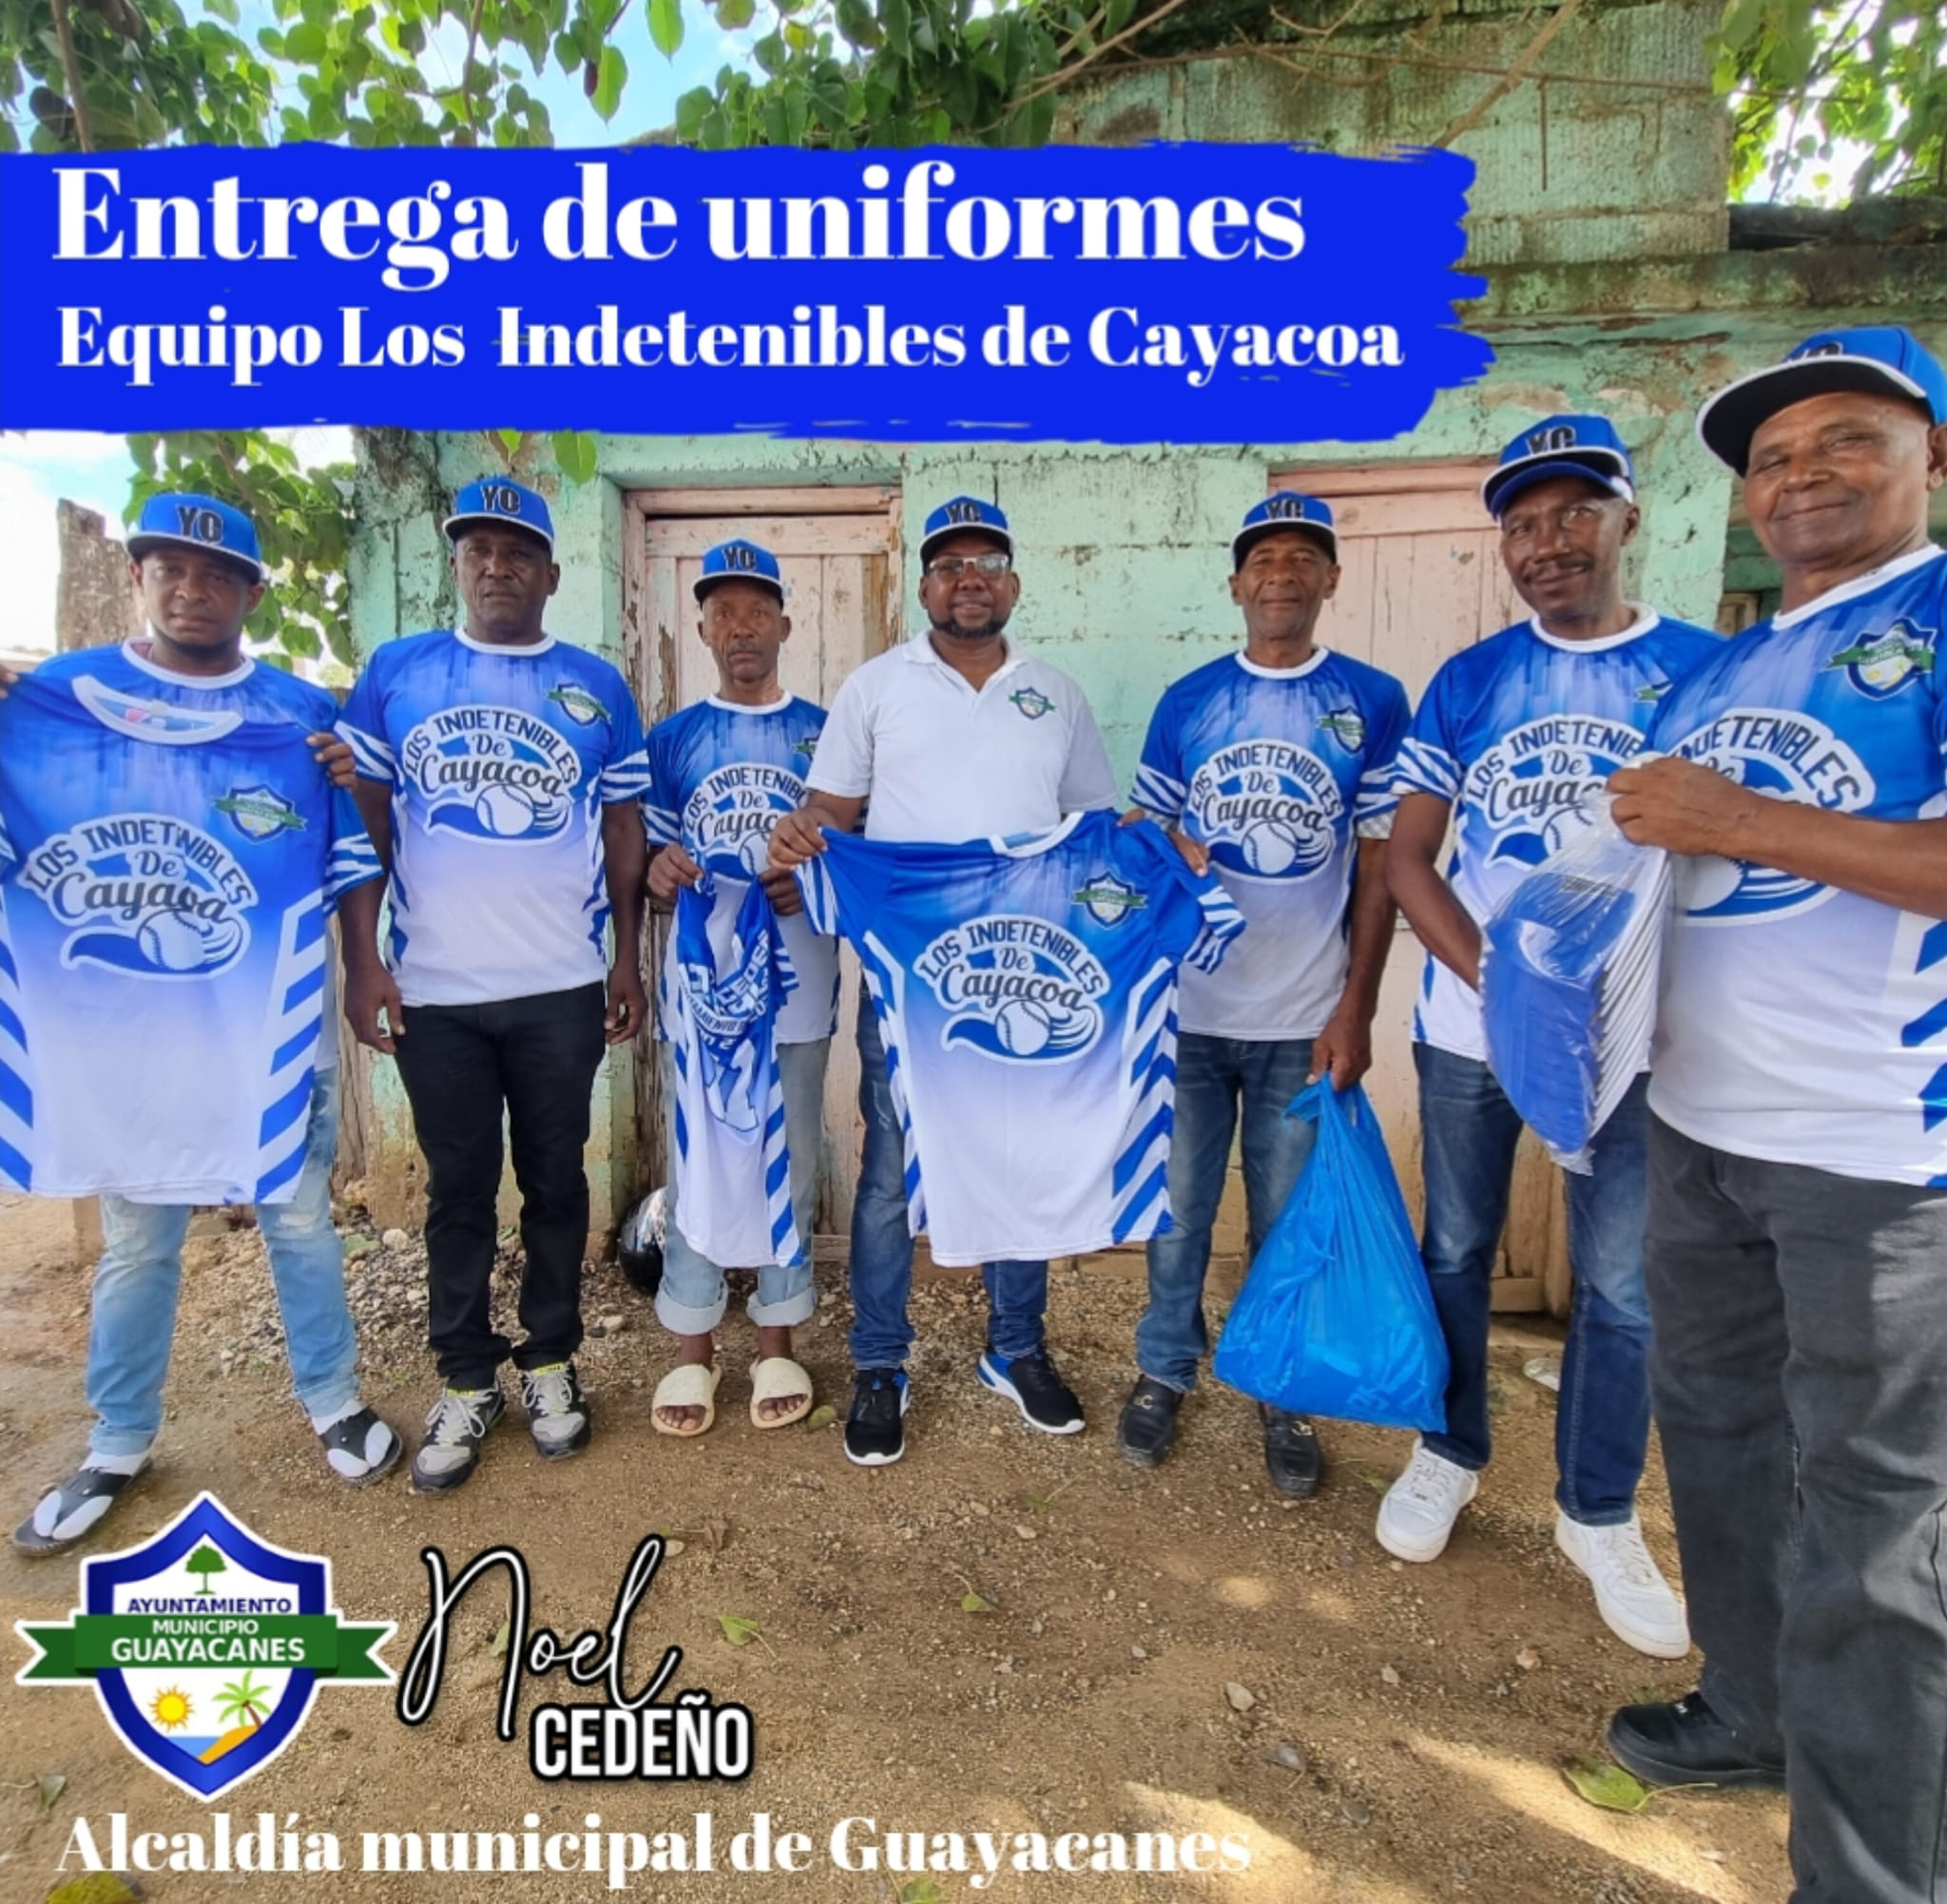 Los indetenibles de Cayacoa, reciben uniformes para el torneo de los añejos, cortesía del alcalde Noel Cedeño y alcaldía municipal de Guayacanes.